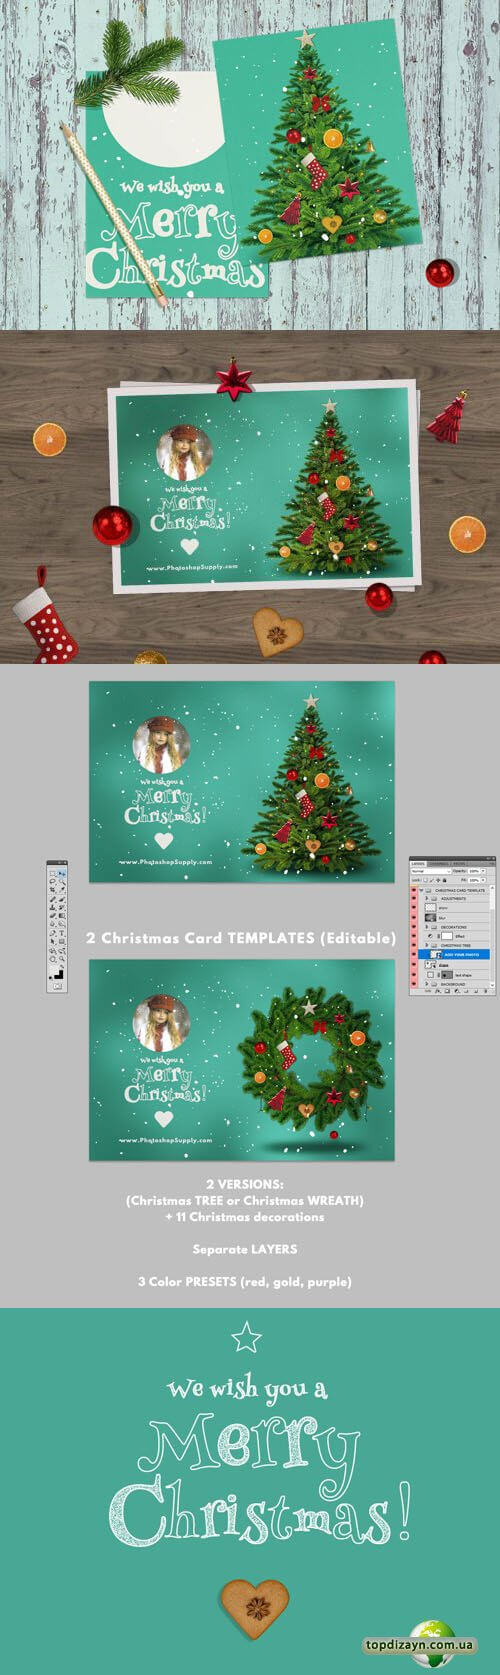 Christmas Card Psd Templates For Photoshop, Разные Шаблоны Inside Christmas Photo Card Templates Photoshop